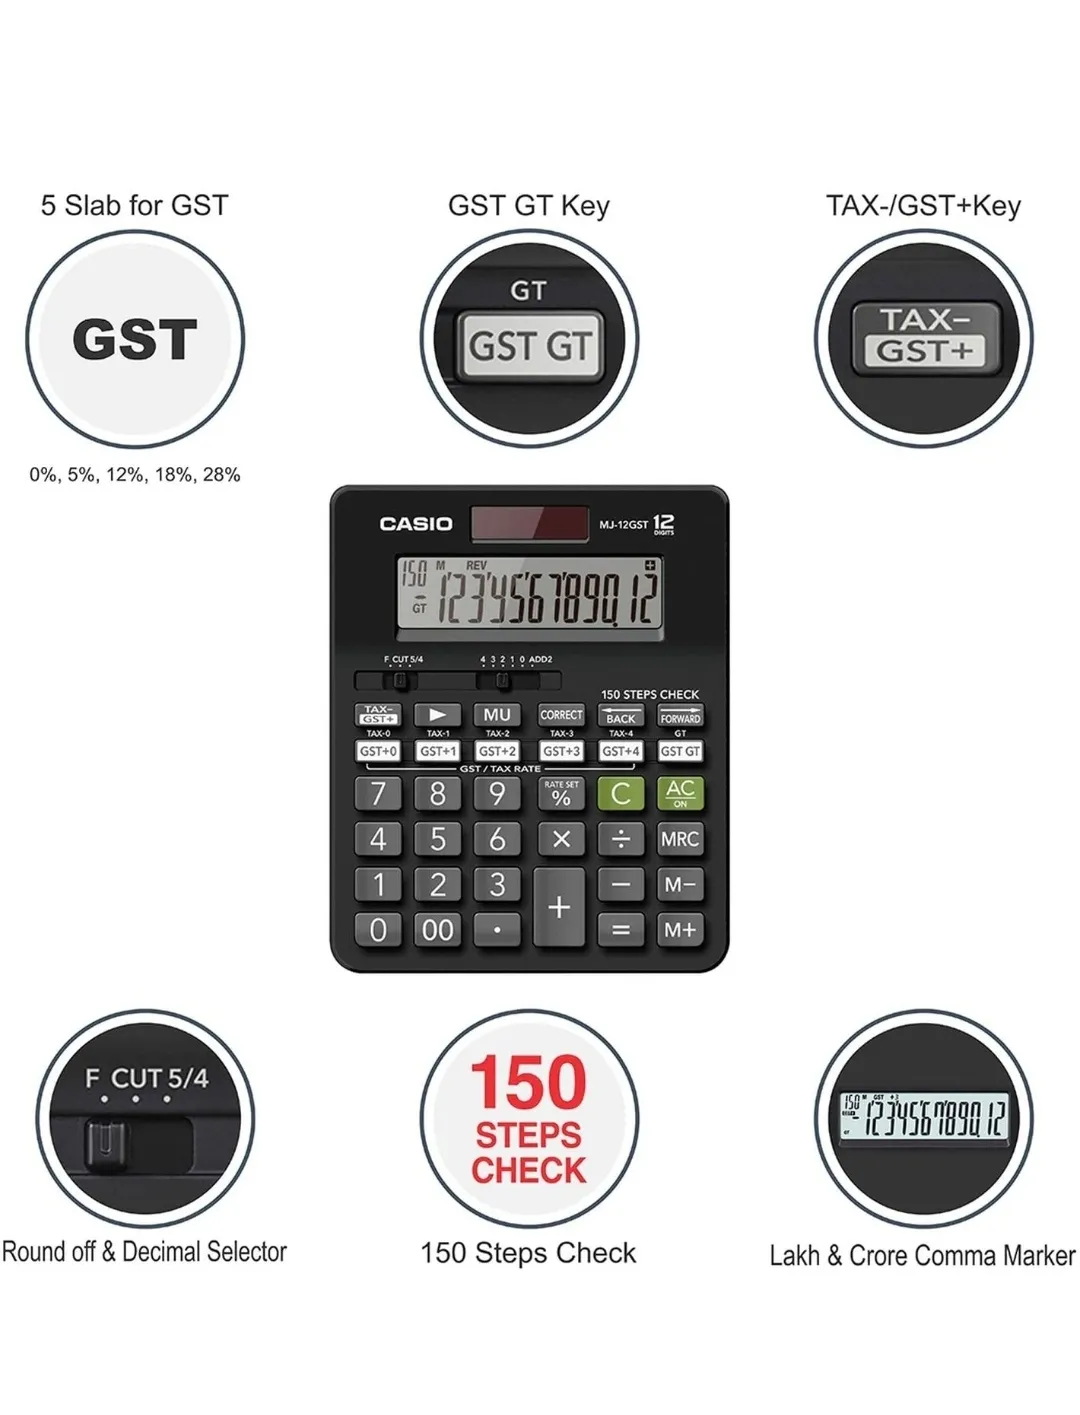 Casio MJ-12GST  GST Calculator